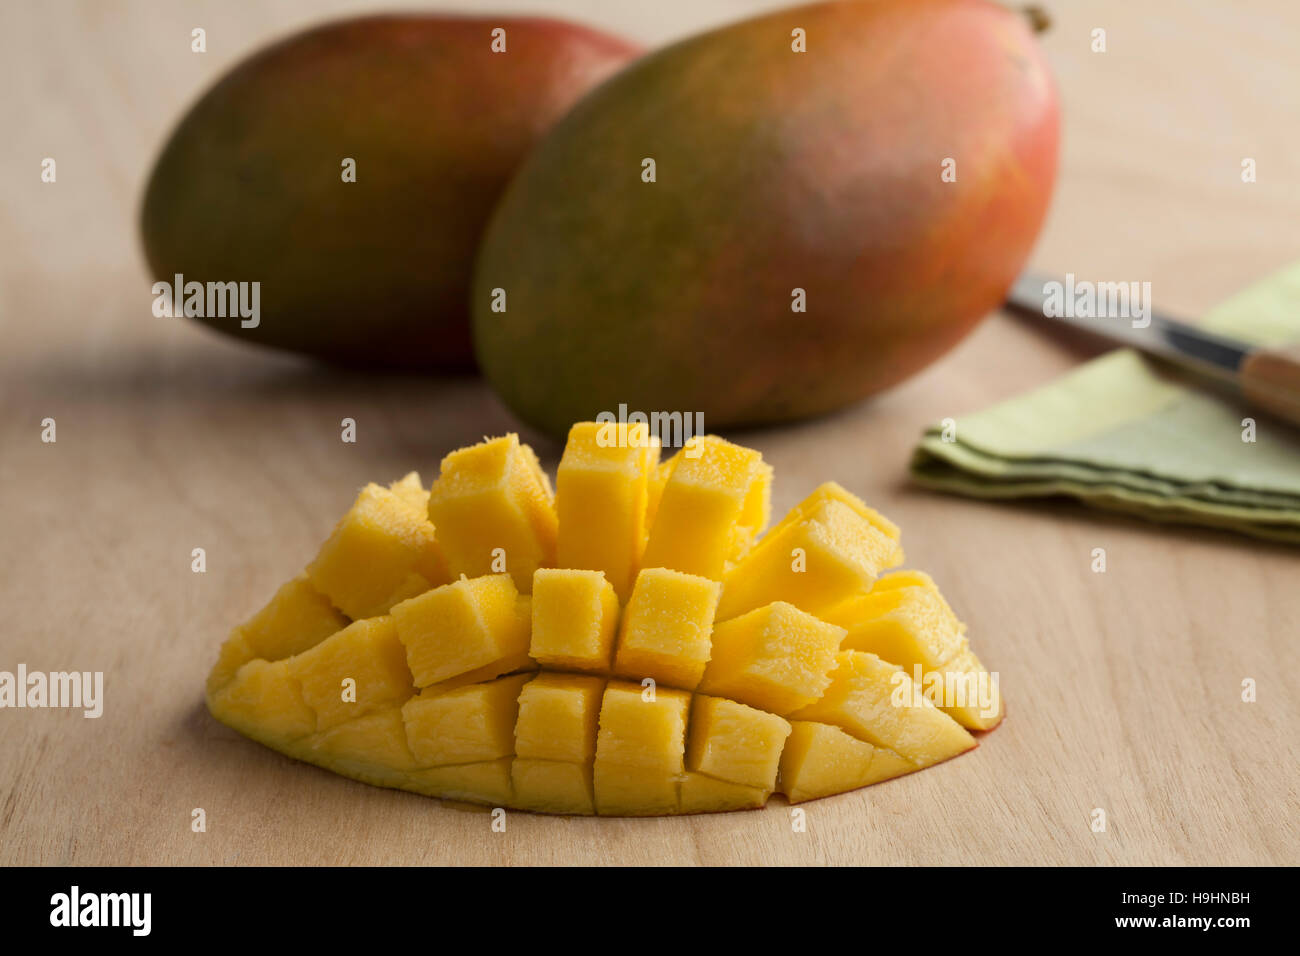 La moitié juteux frais mûrs de mangue jaune et son ensemble dans l'arrière-plan Banque D'Images